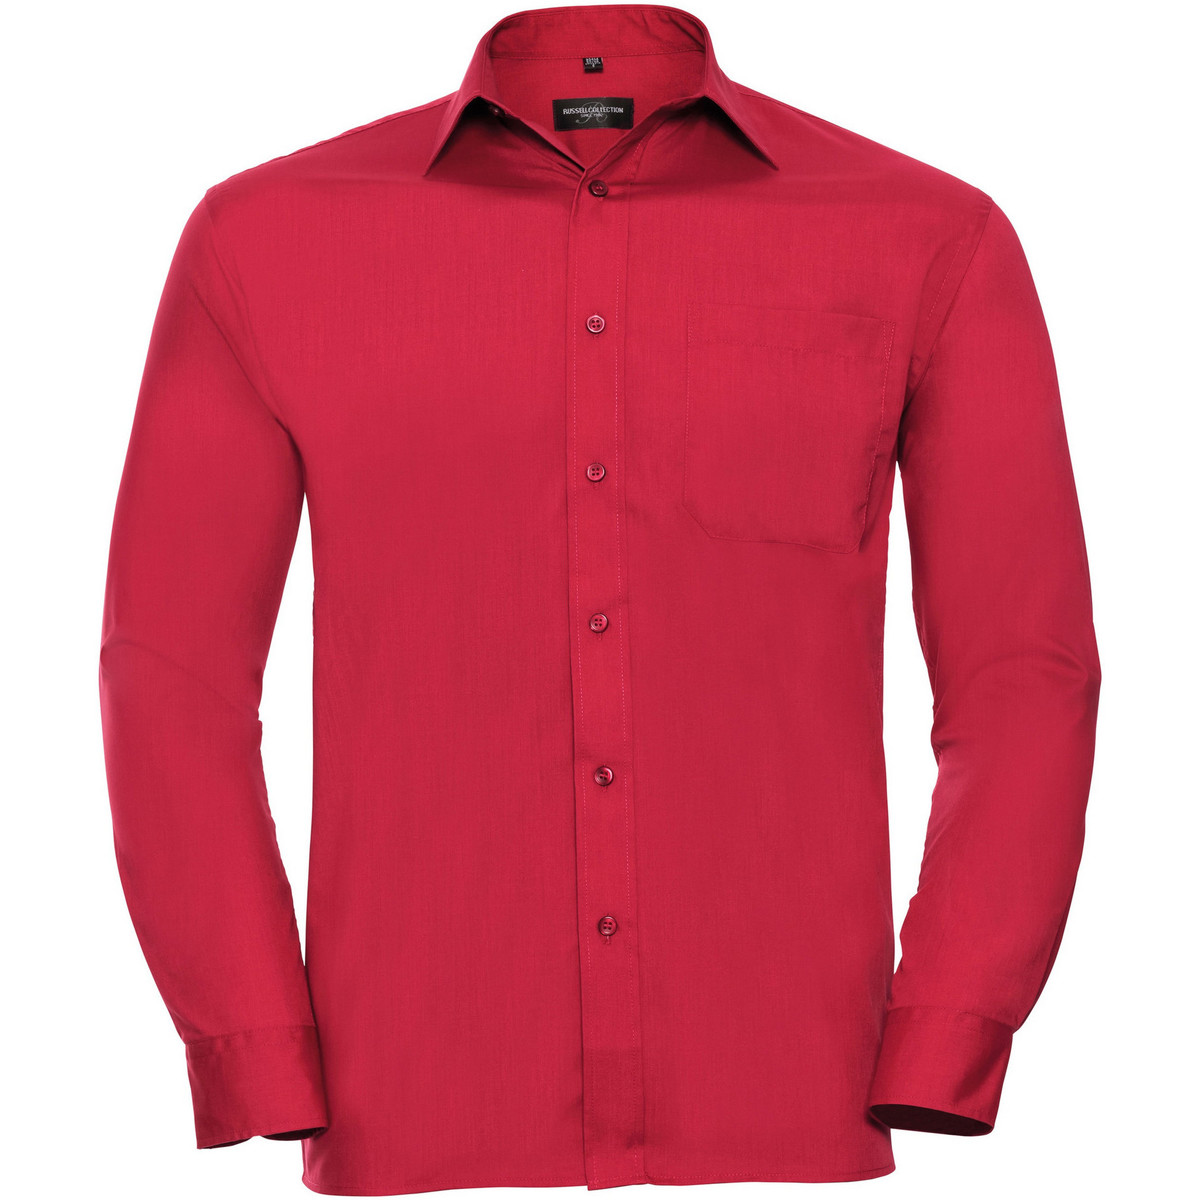 Vêtements Homme Robes, Manteaux, Vestes 934M Rouge